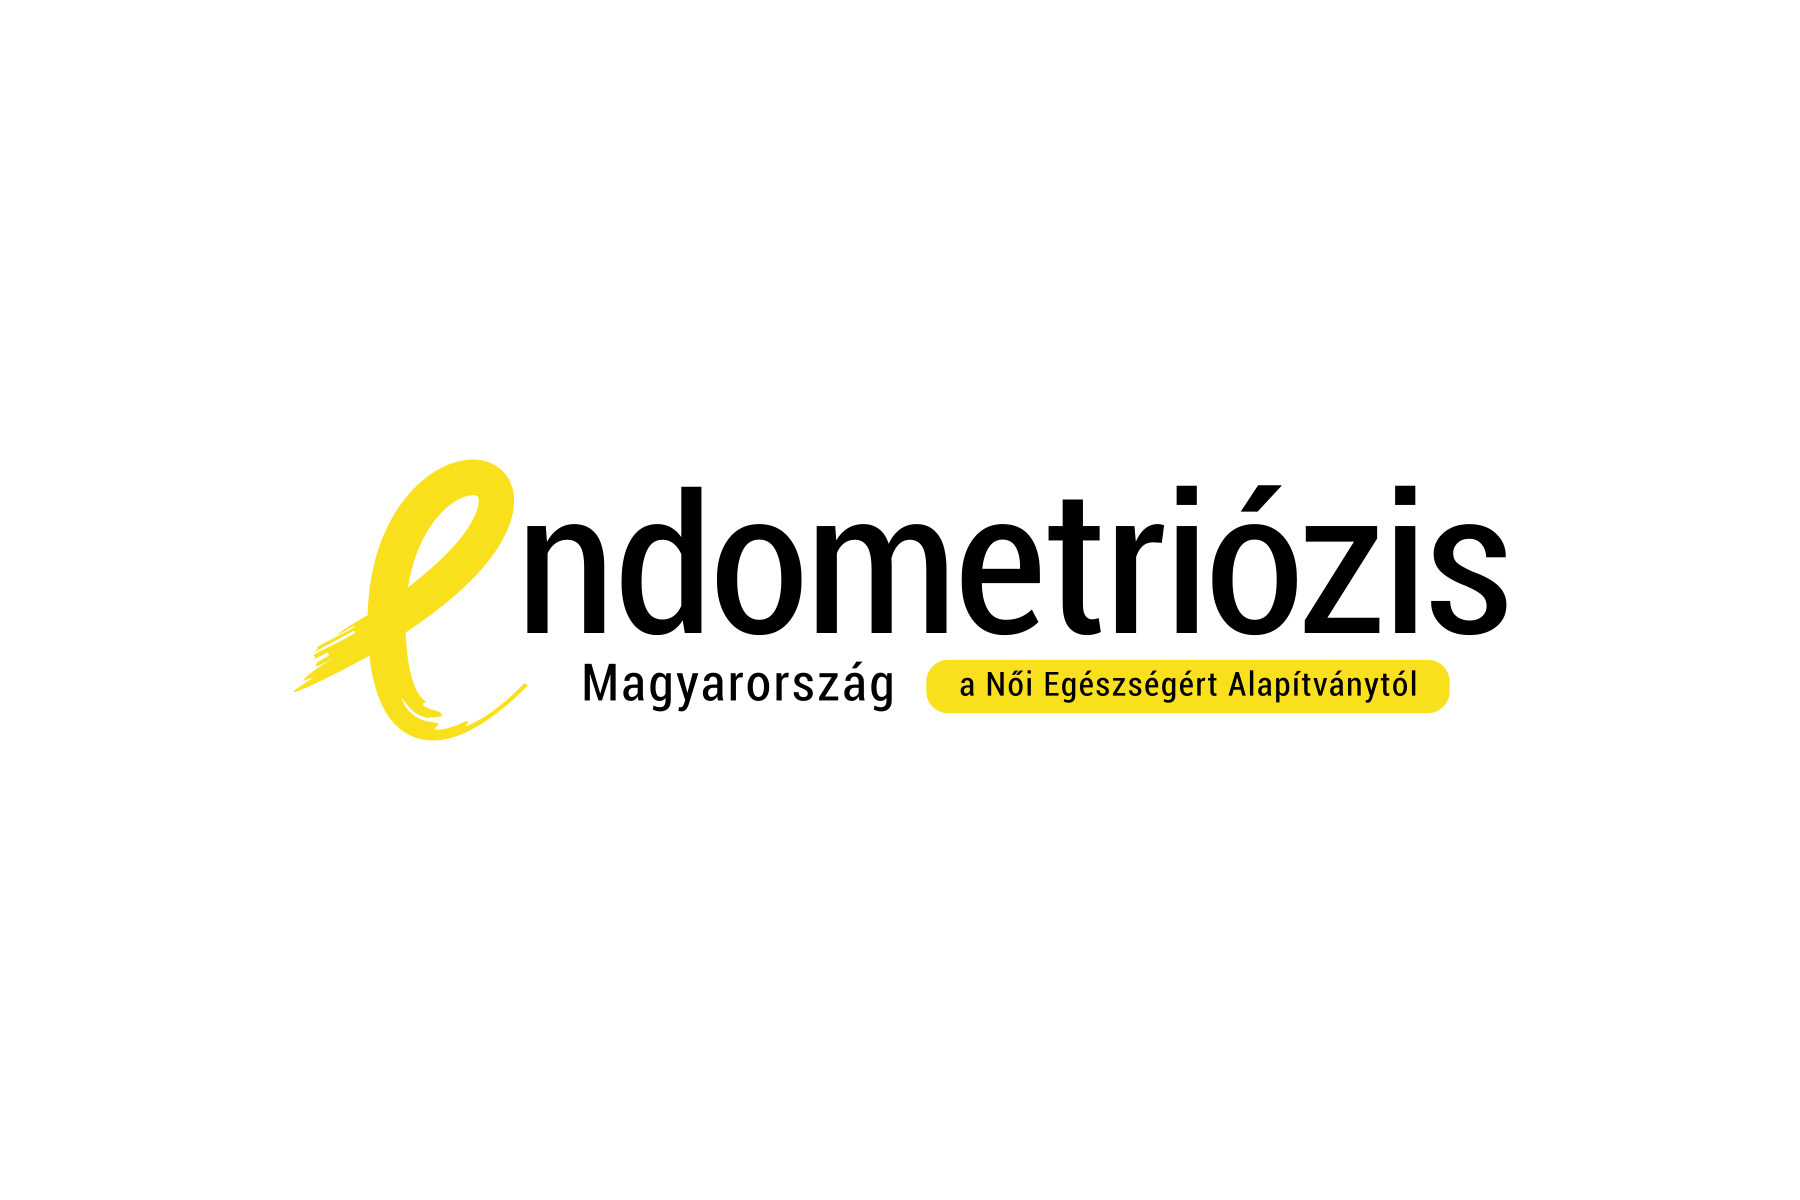 Endometriózis Magyarország